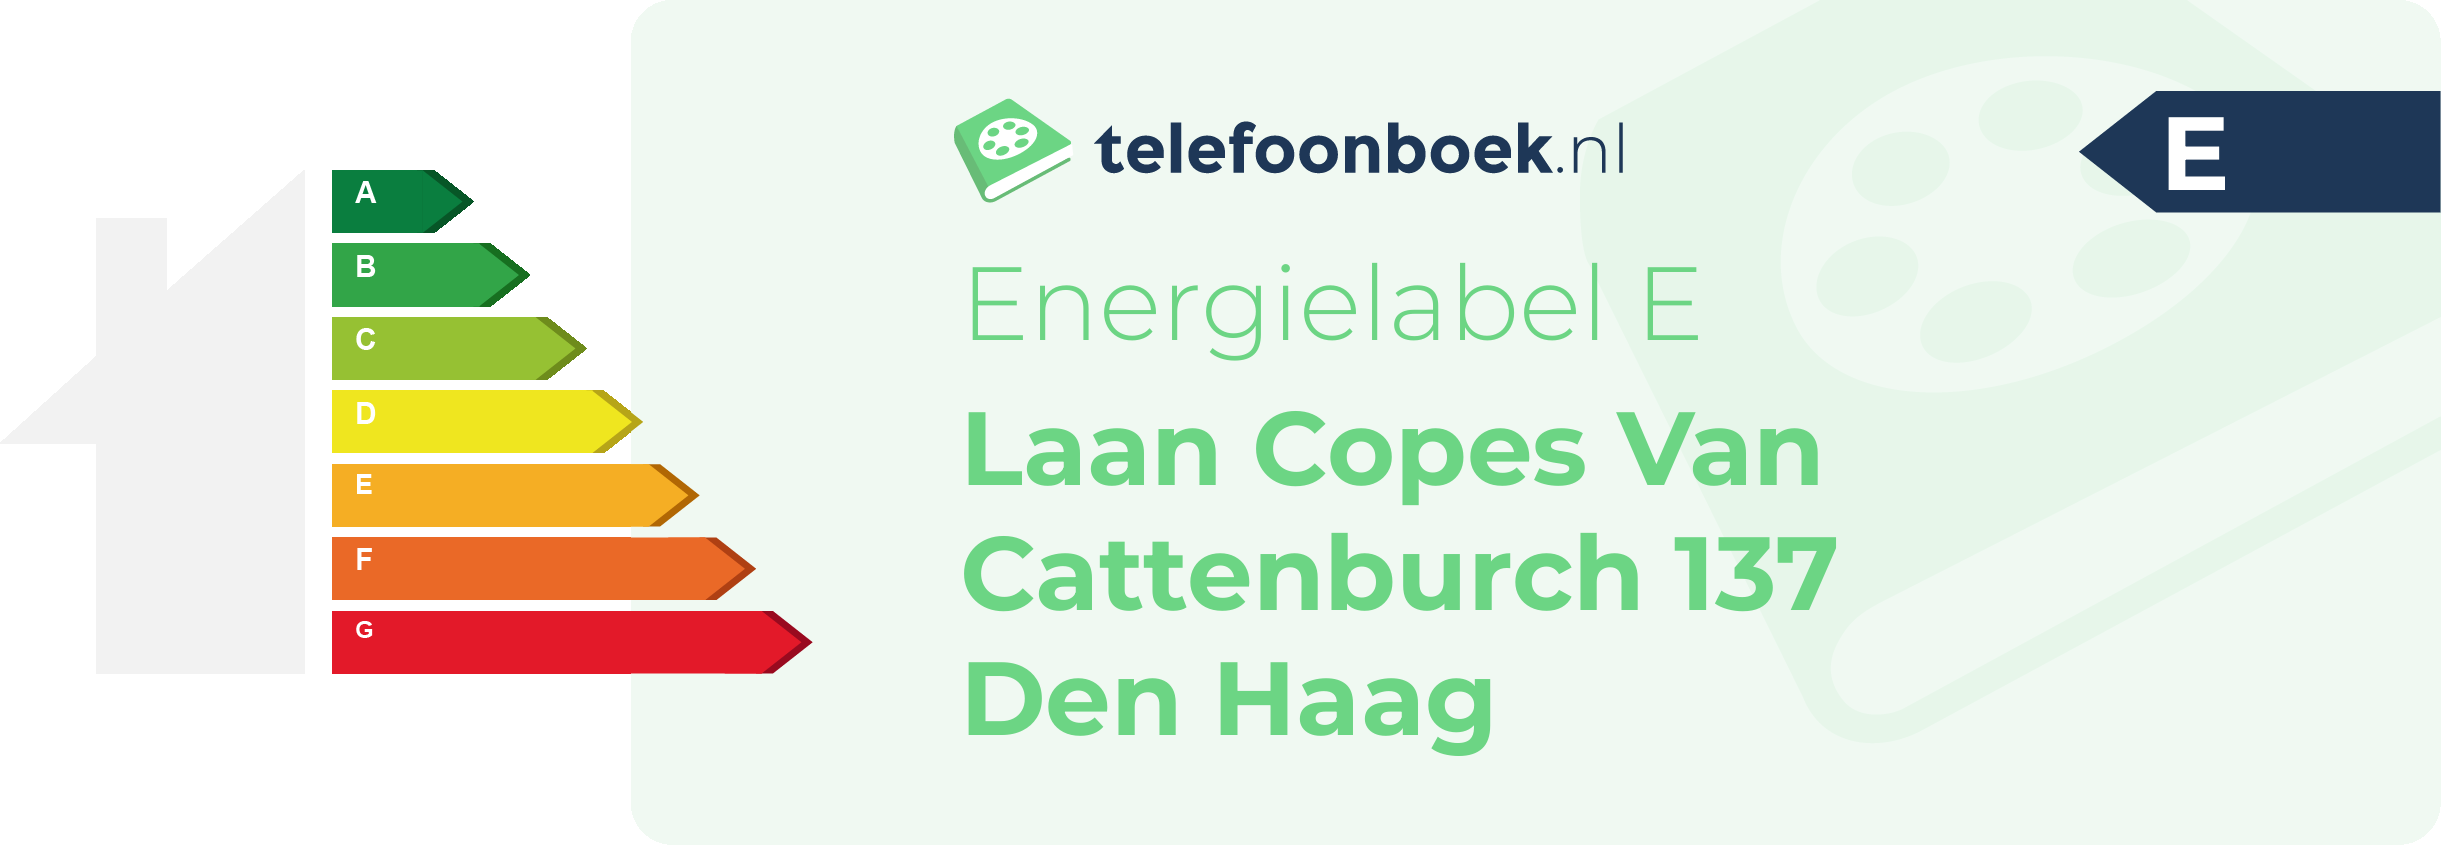 Energielabel Laan Copes Van Cattenburch 137 Den Haag